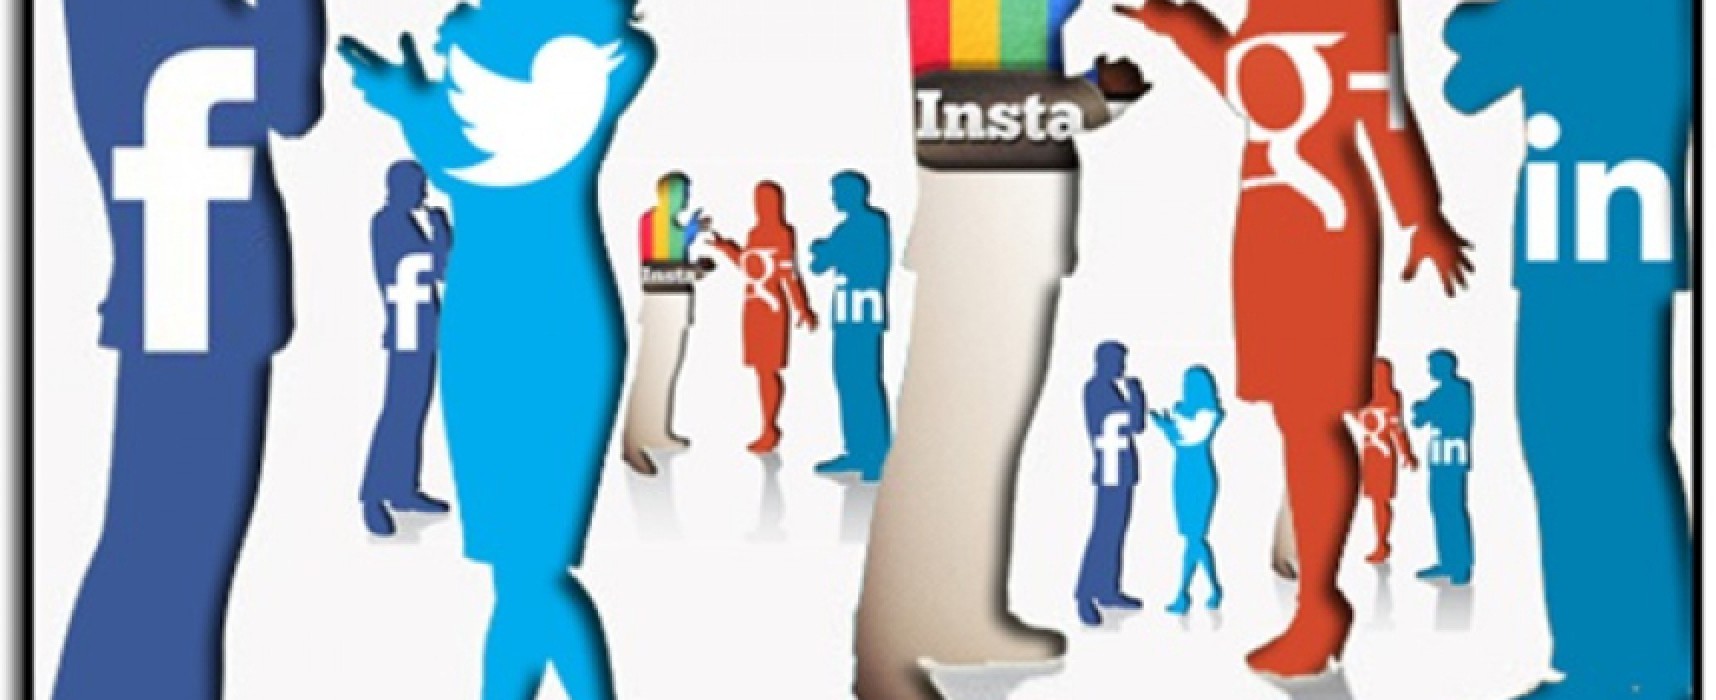 “Le relazioni ai tempi di Facebook” a cura della dott.ssa Renata Rana